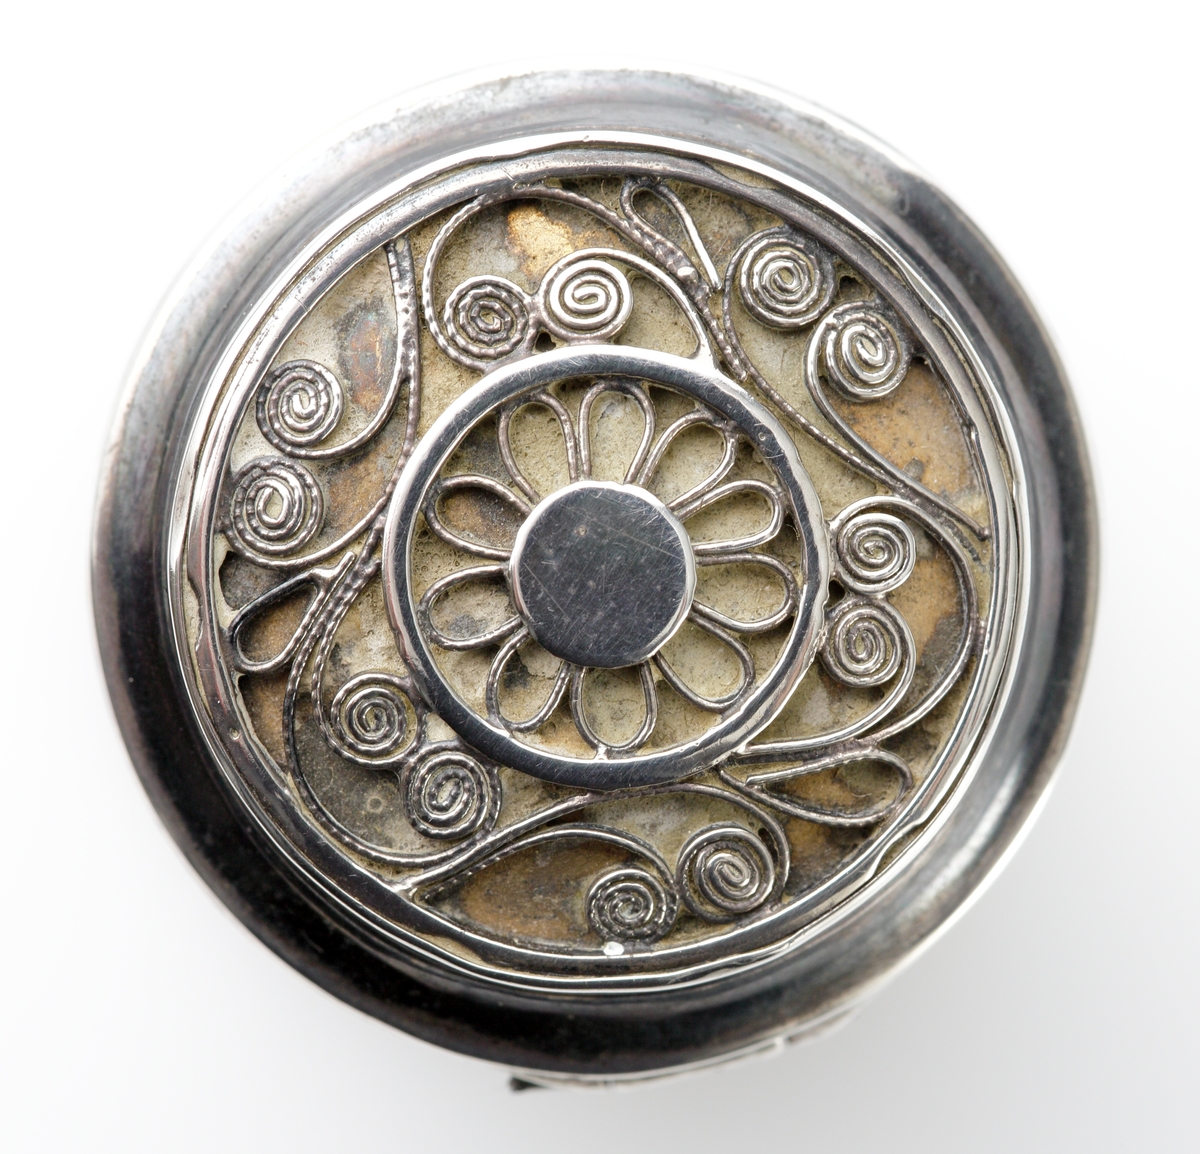 Luktdosa av silver.
Cylindrisk modell med filigranmönster (blomma m.m.) på locket. Invändigt förgylld.
Stämplar på dosans undersida.